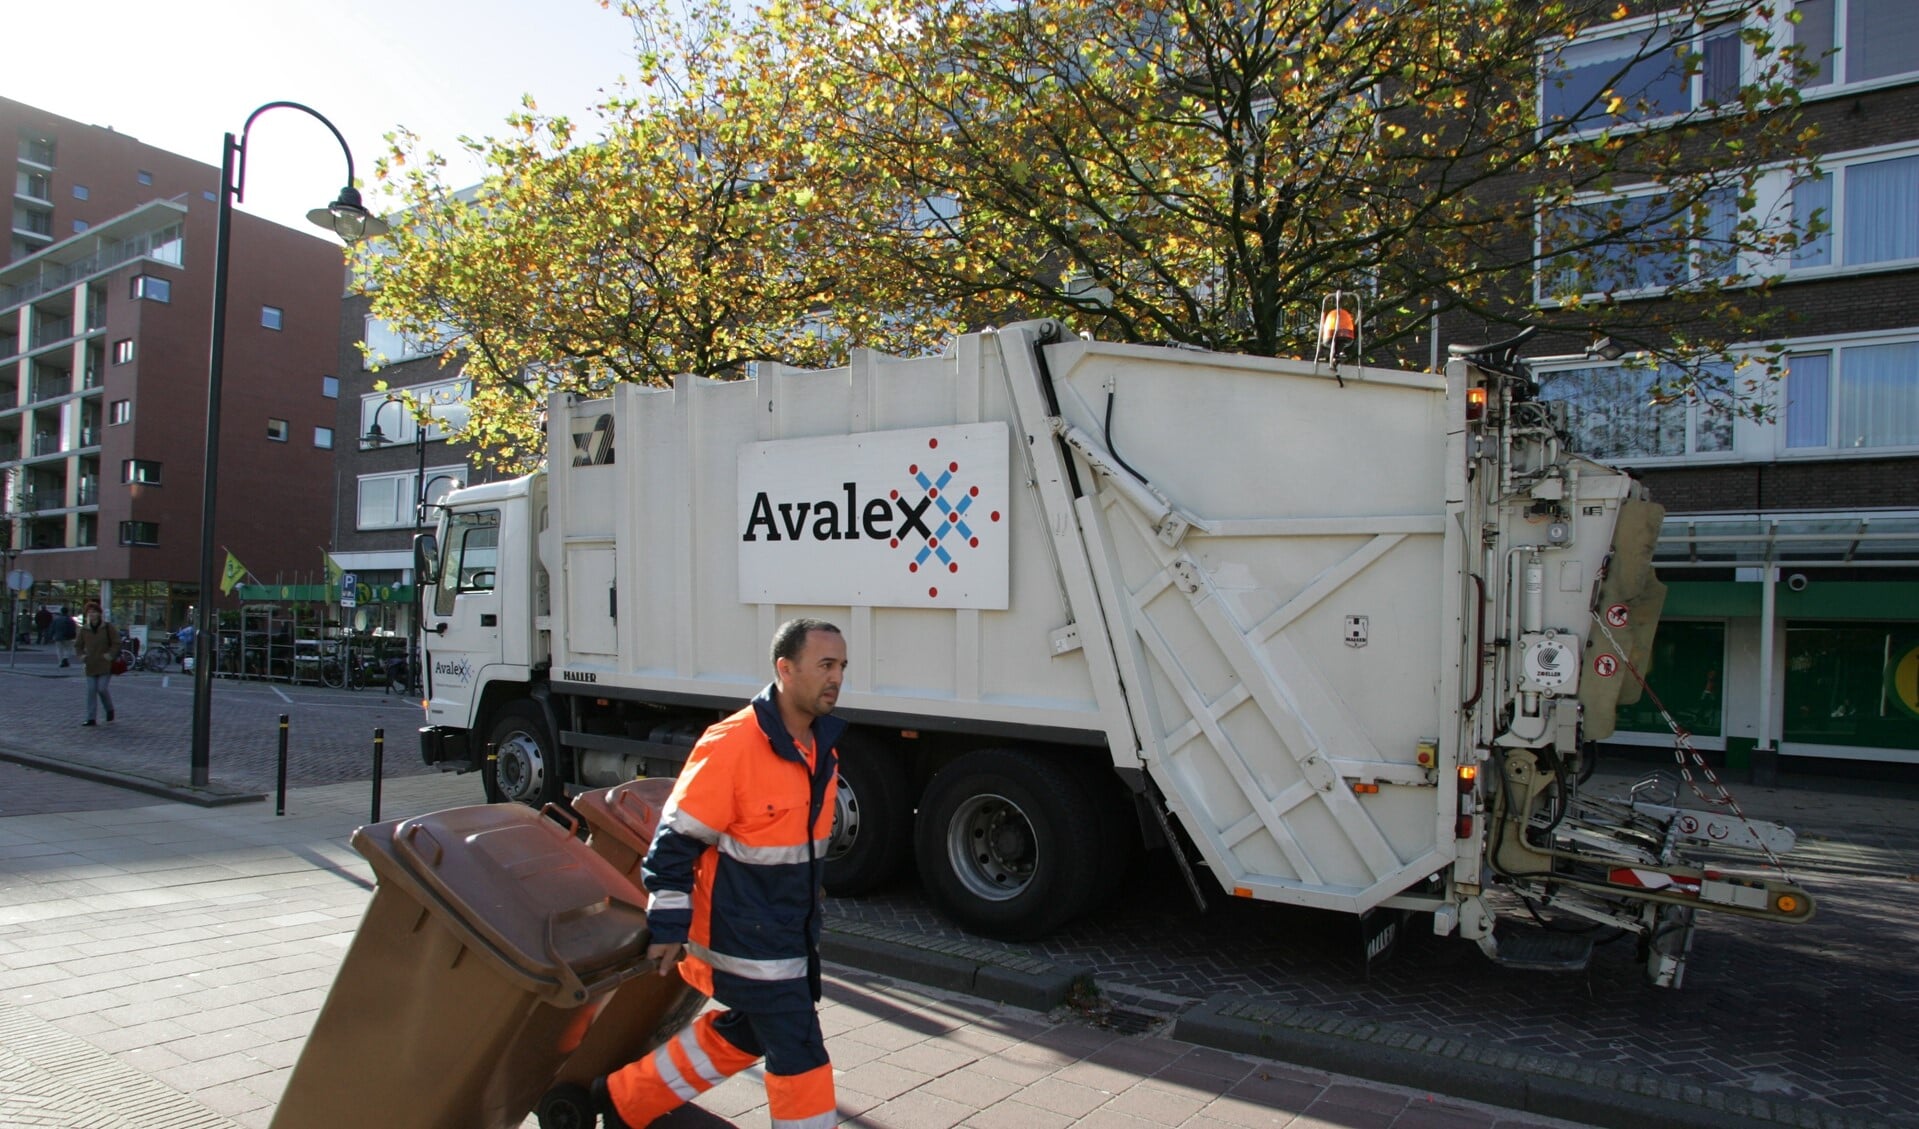 De VVD vraagt zich af hoeveel kliko's mensen straks moeten stallen (archieffoto Avalex).